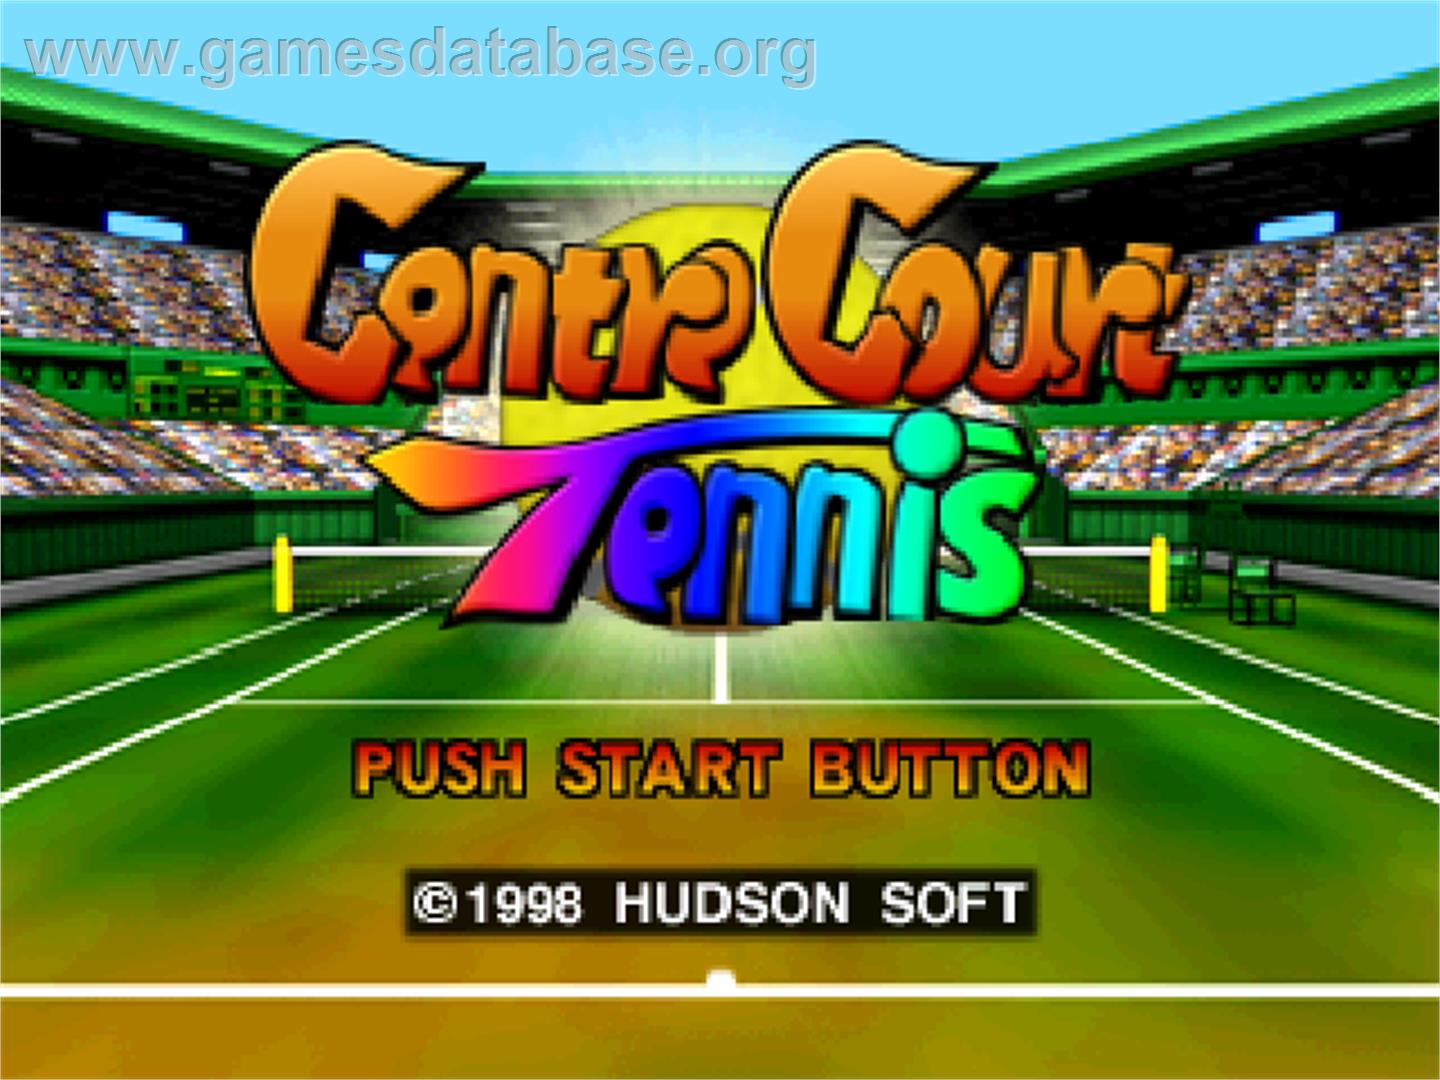 Centre Court Tennis - Nintendo N64 - Artwork - Title Screen